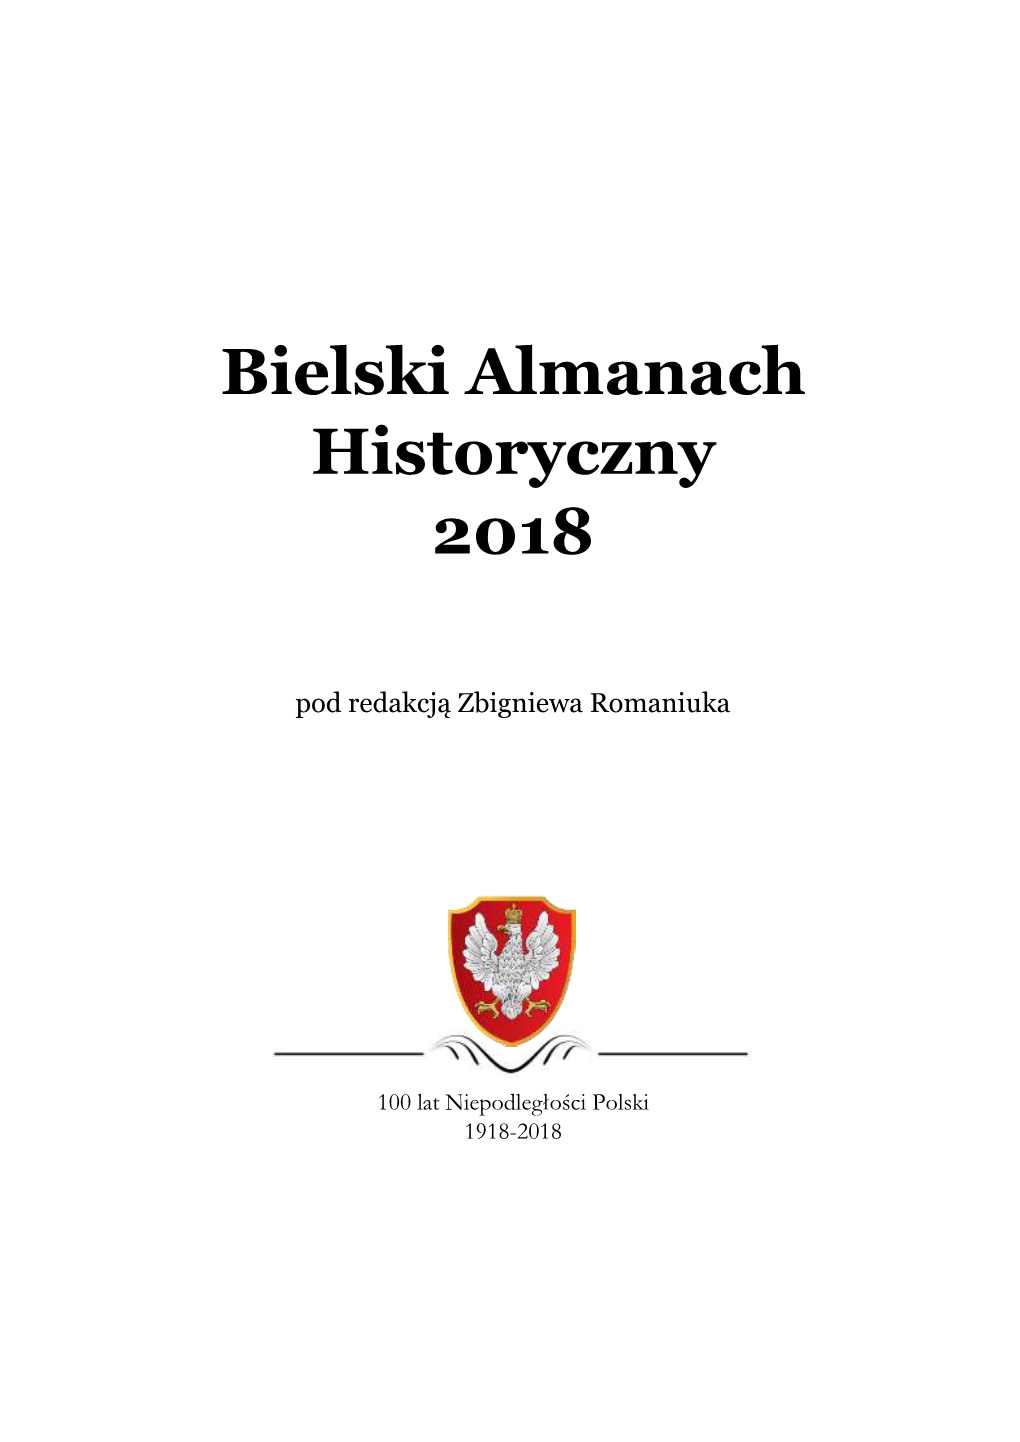 Bielski Almanach Historyczny 2018